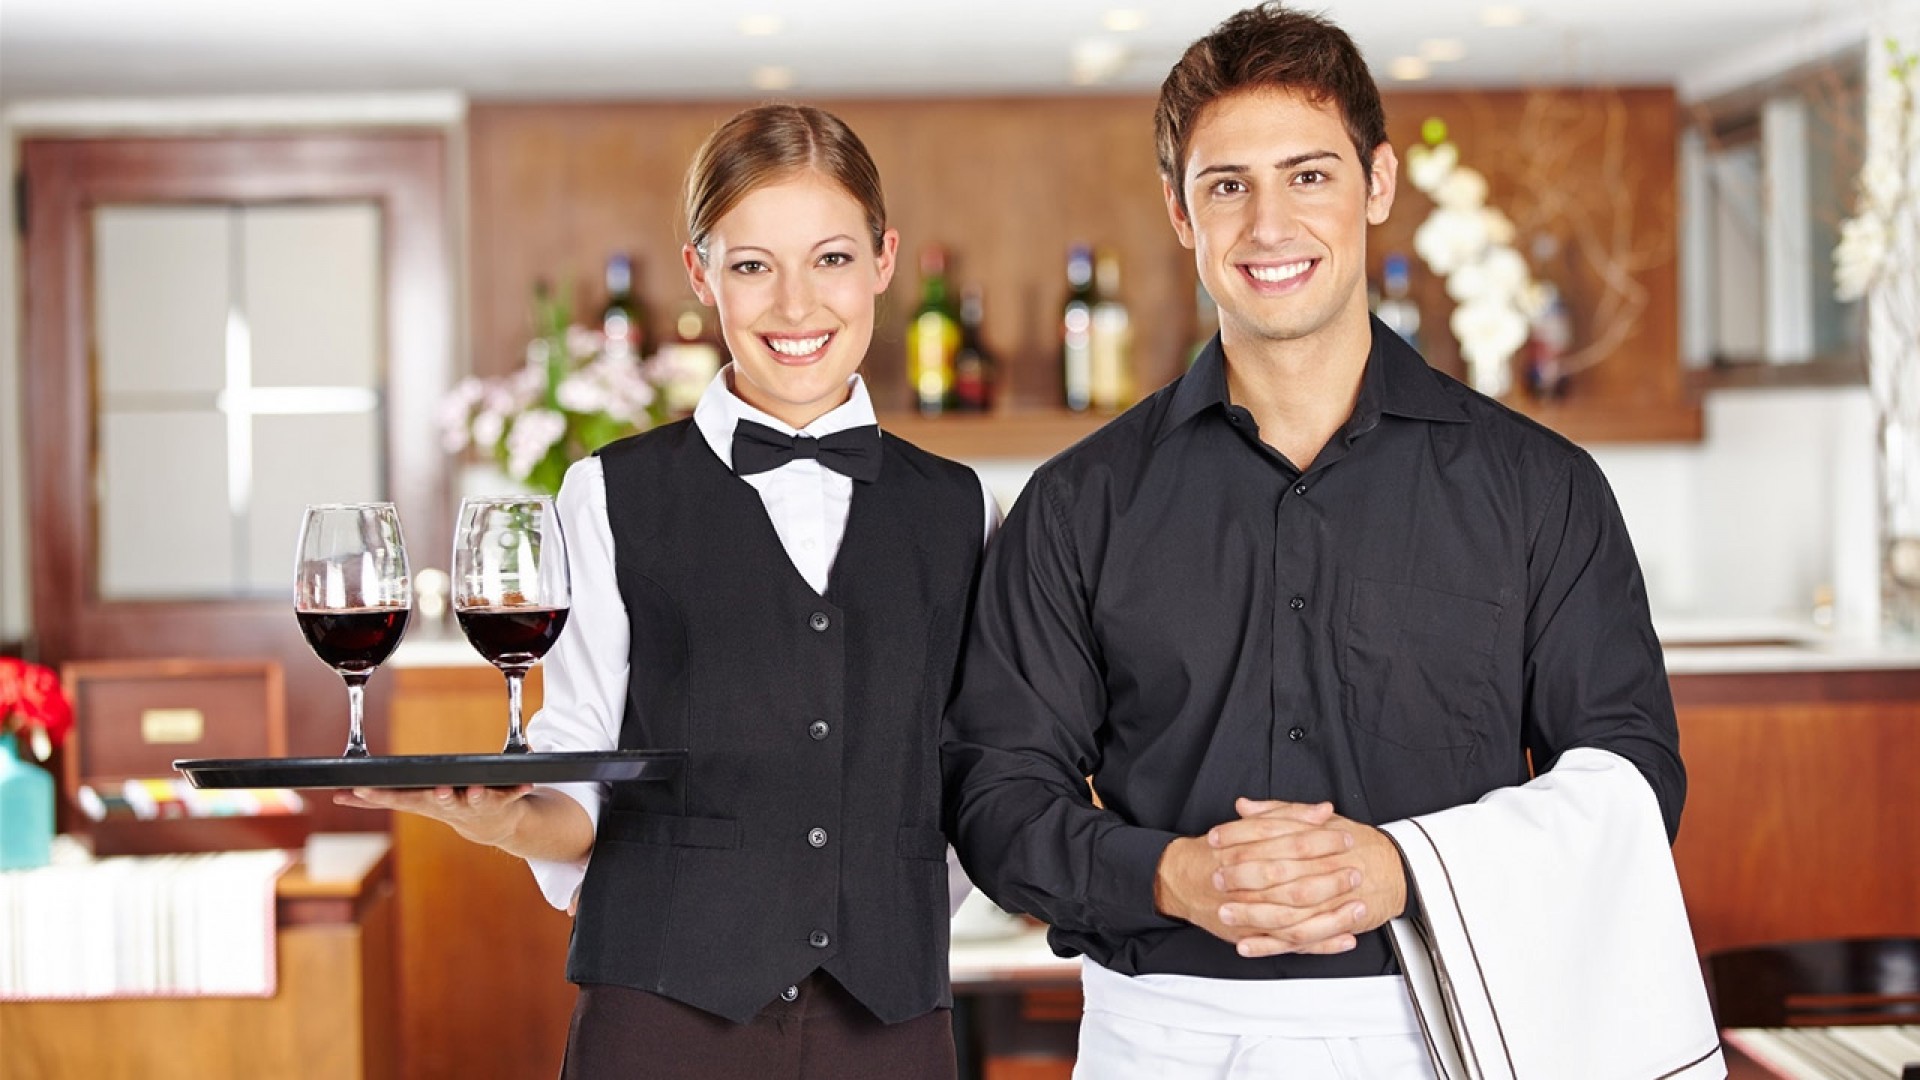 Chuyên nghiệp hơn với các mẫu câu tiếng Anh giao tiếp trong nhà hàng cho nhân viên